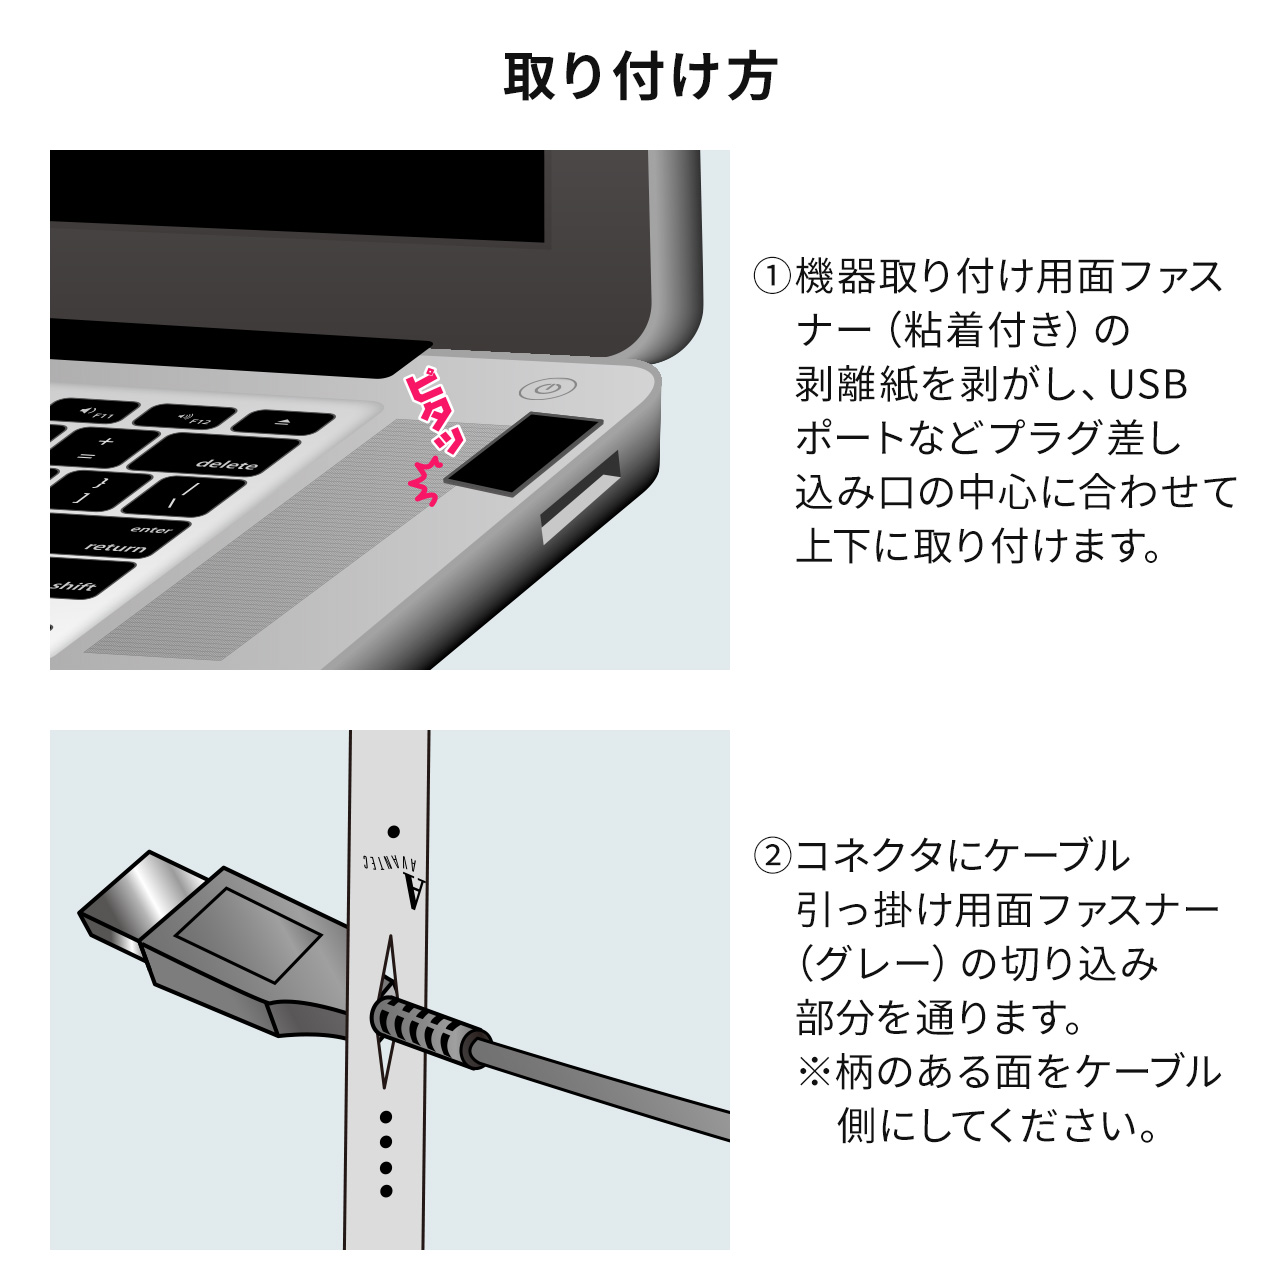 抜け止めツール USBケーブル USB-A microUSB セキュリティ アヴァンテック IZAチョイロック 200-SL102